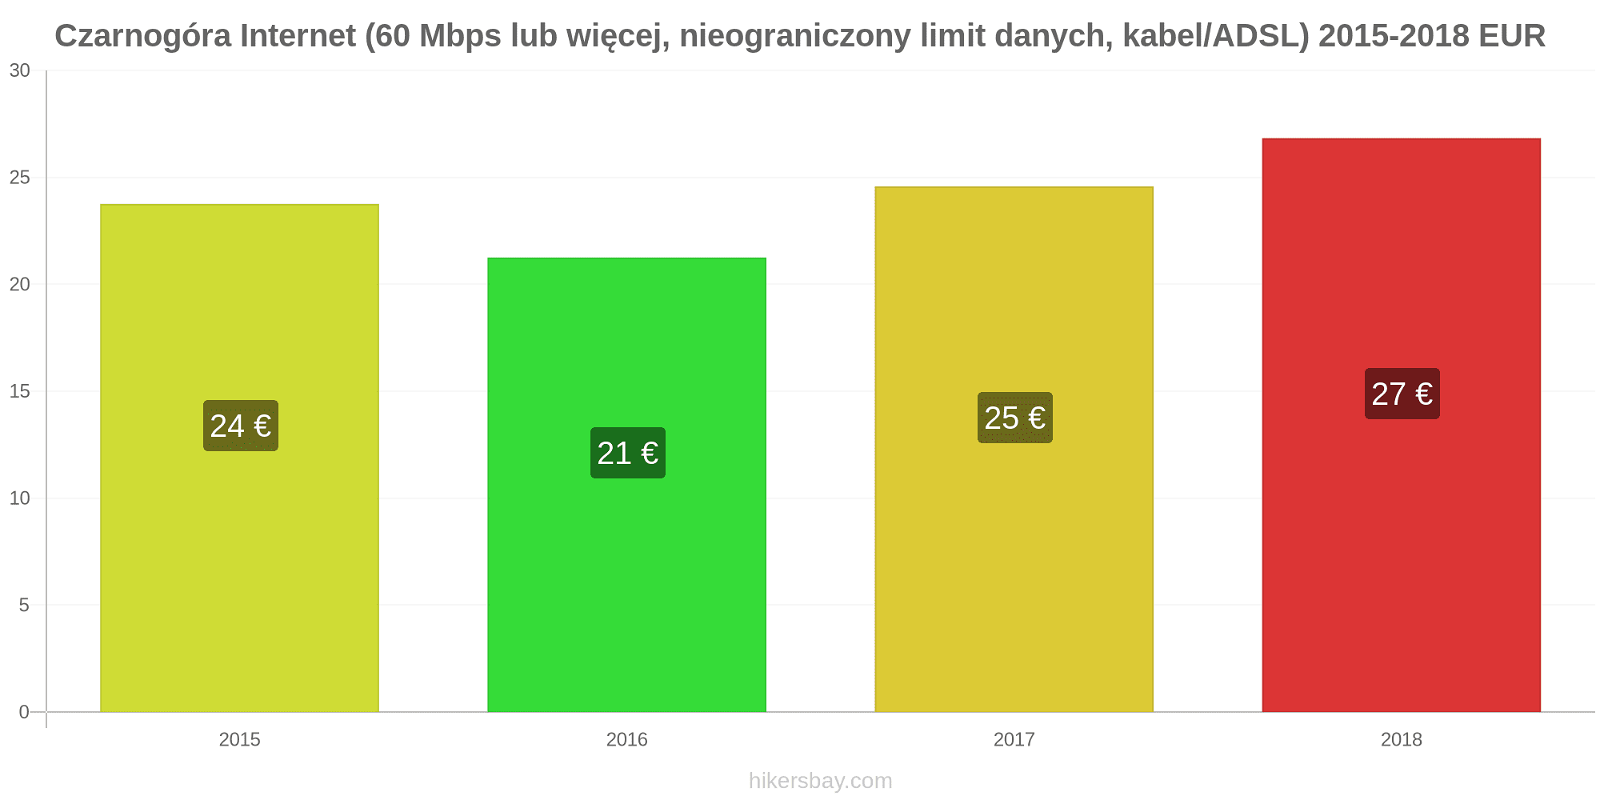 Czarnogóra zmiany cen Internet (60 Mbps lub więcej, nieograniczony limit danych, kabel/ADSL) hikersbay.com